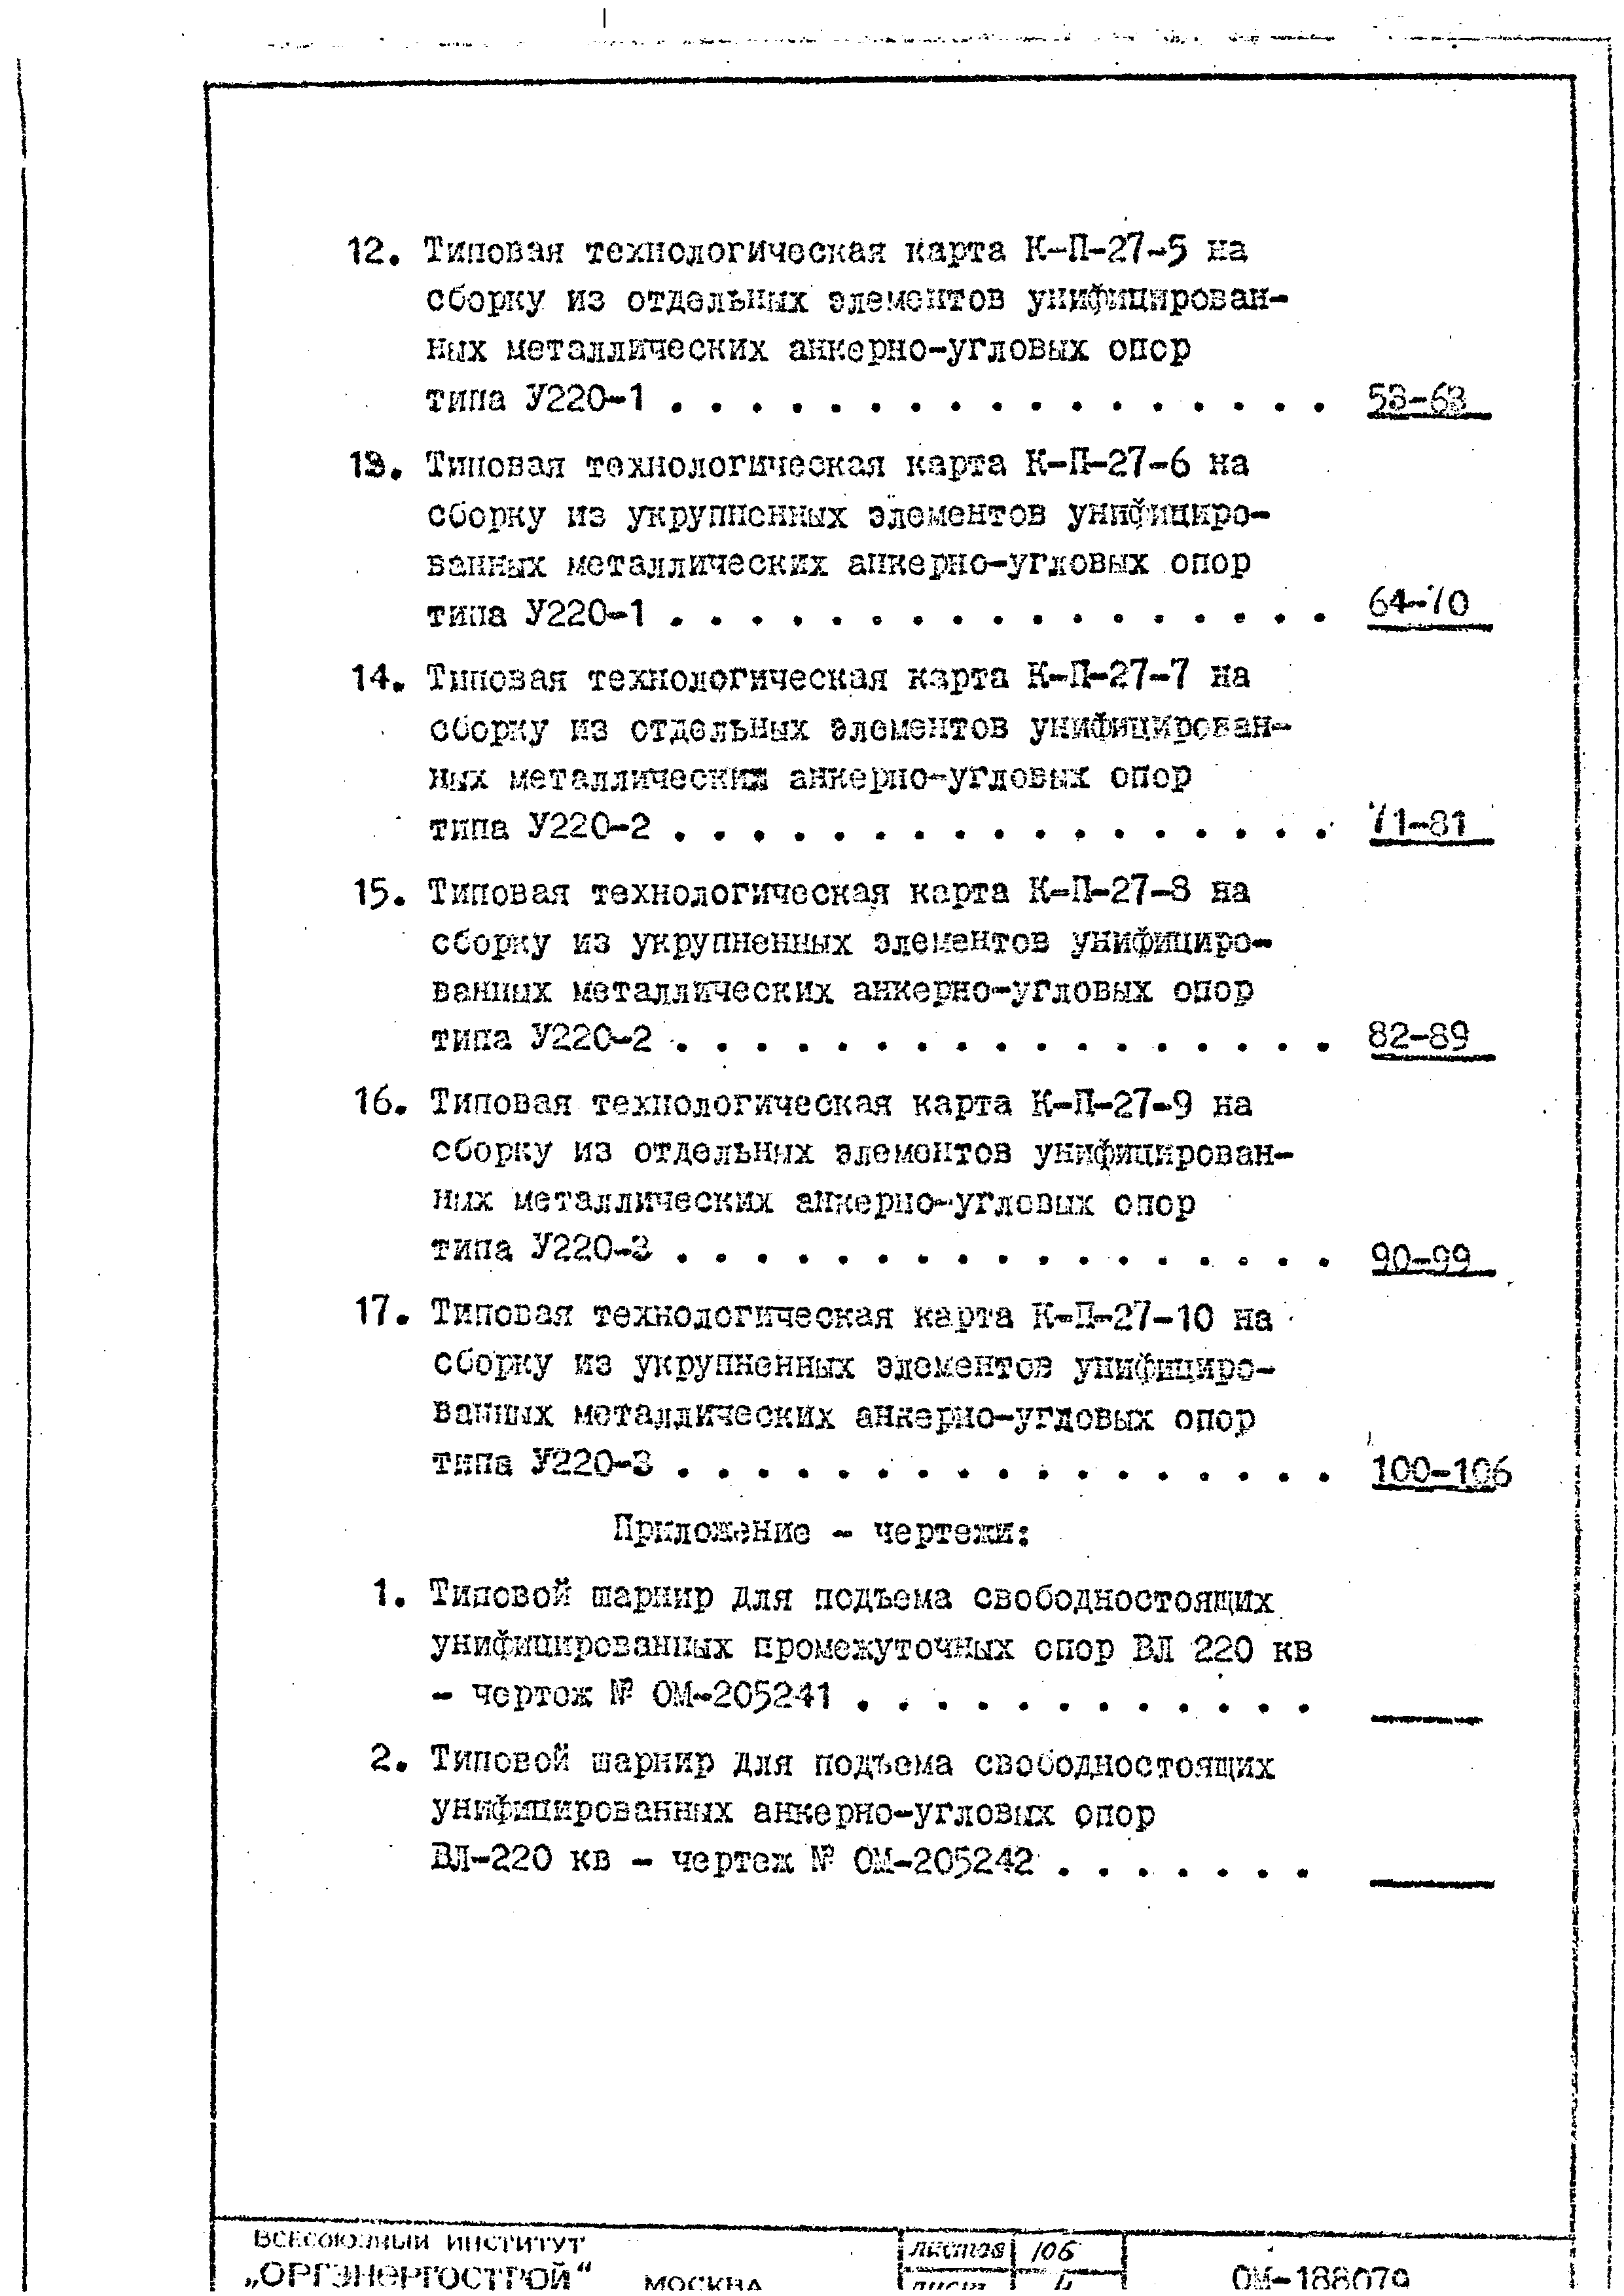 ТТК К-II-27-5